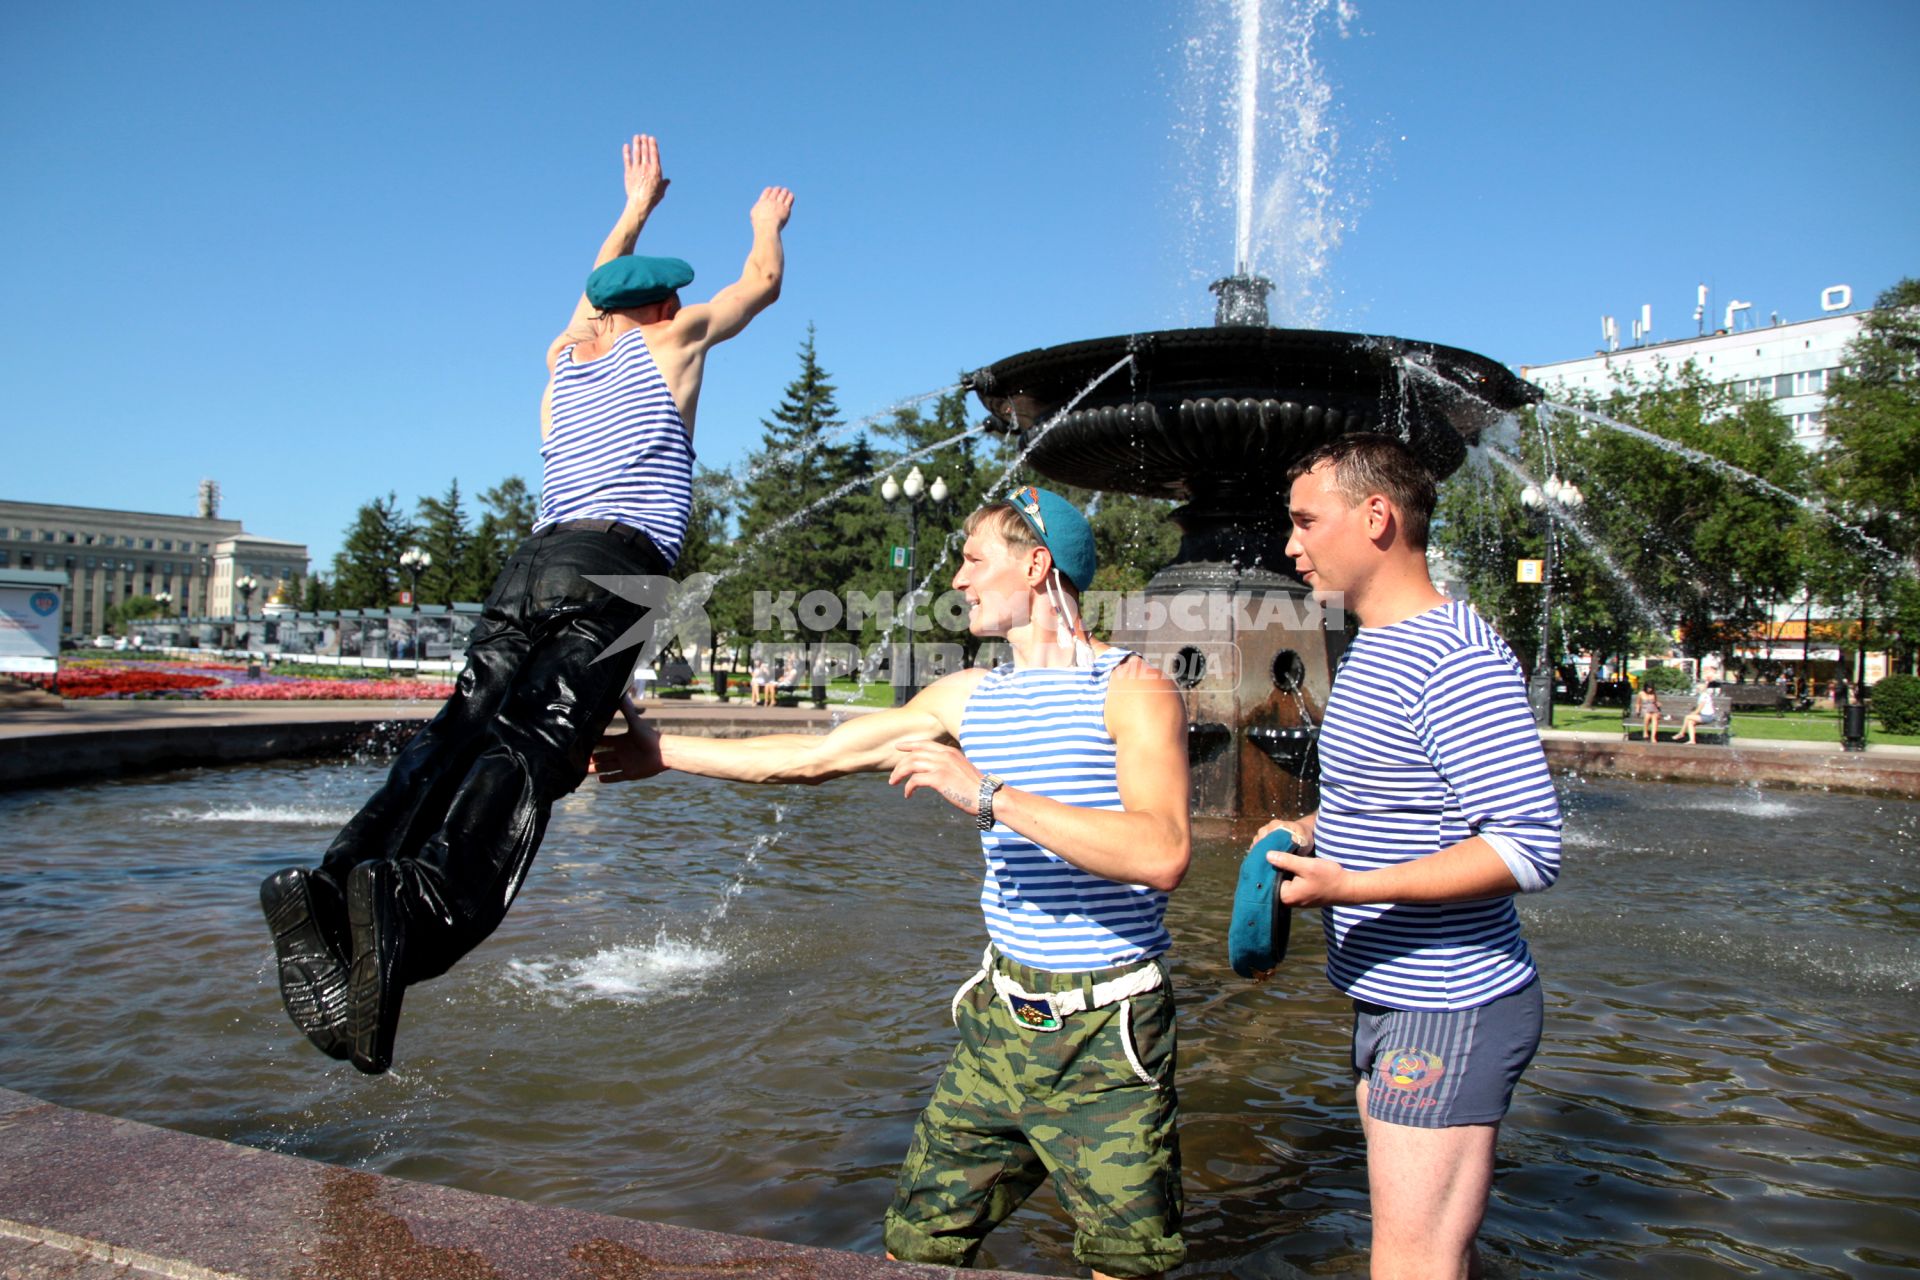 Иркутск.  Десантники в фонтане во время празднования Дня Воздушно-десантных войск.